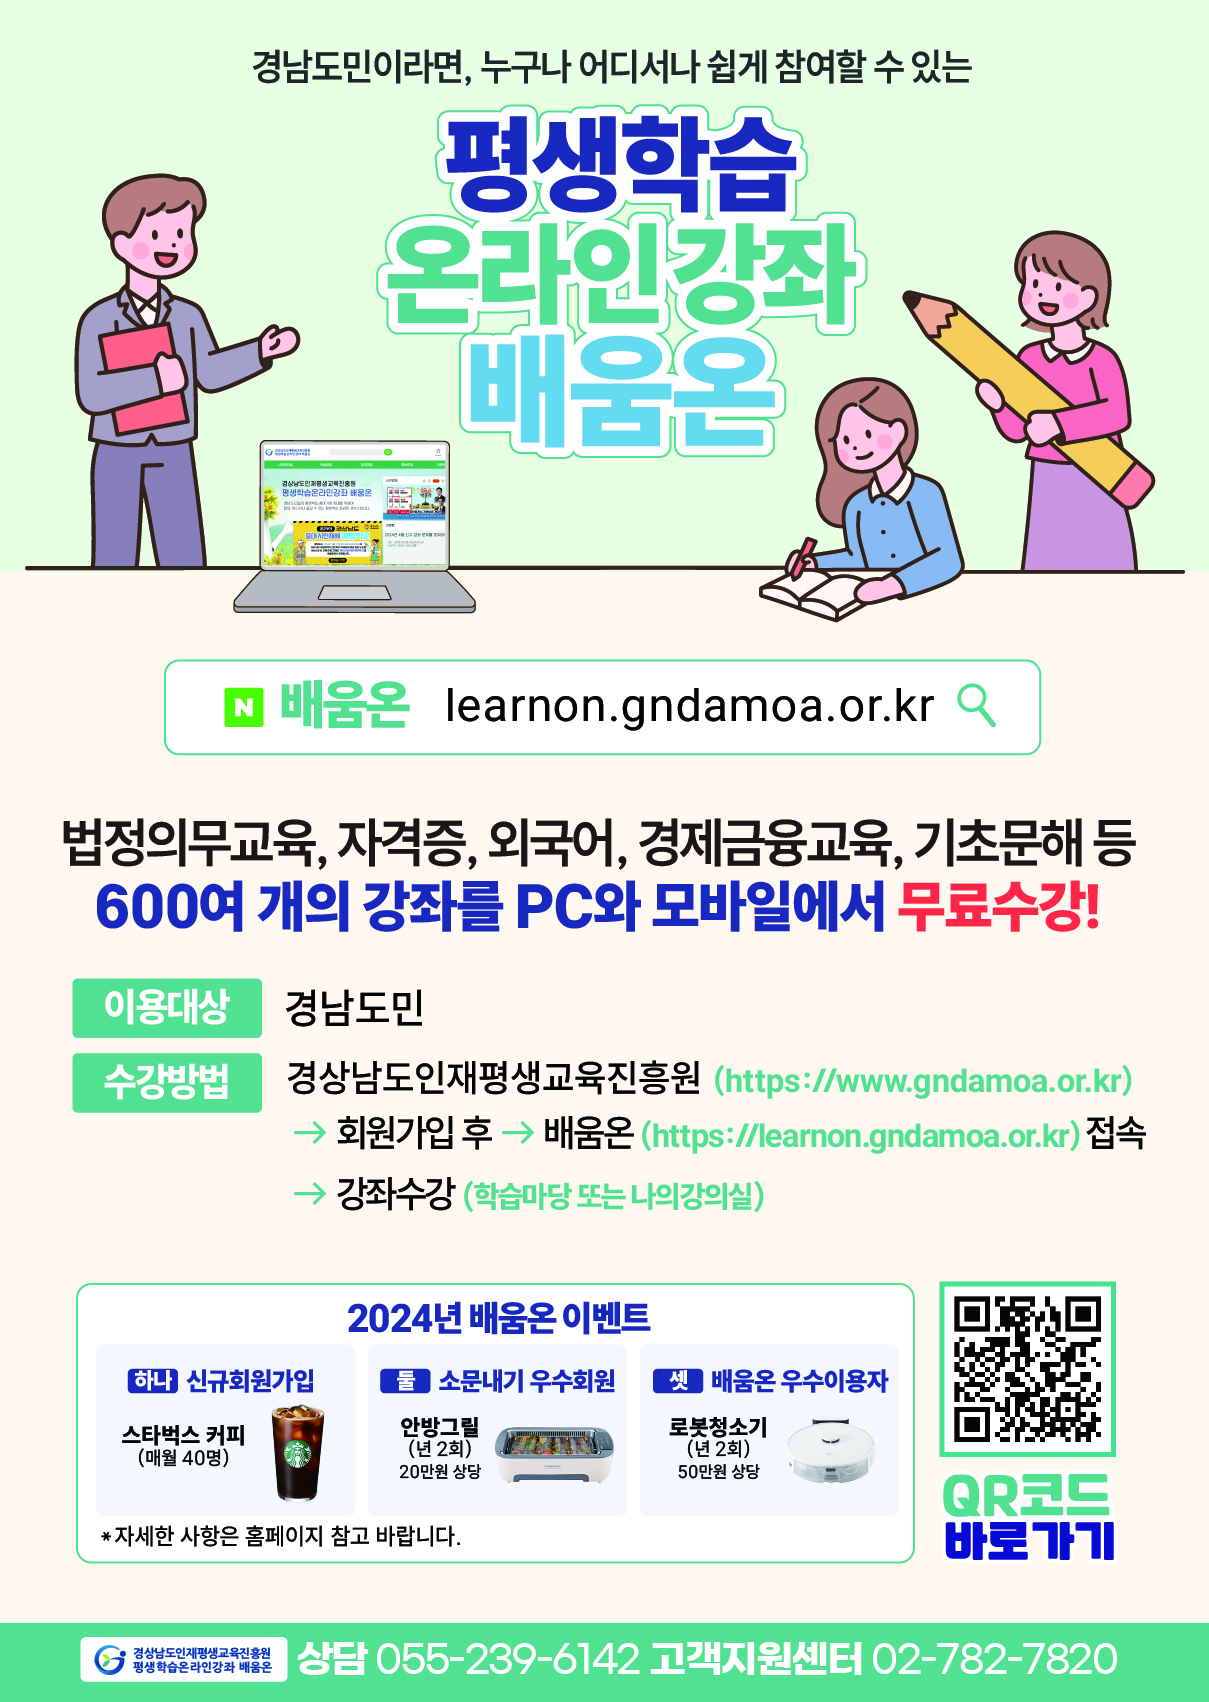 『경남 평생학습 온라인 강좌 배움온』 홍보